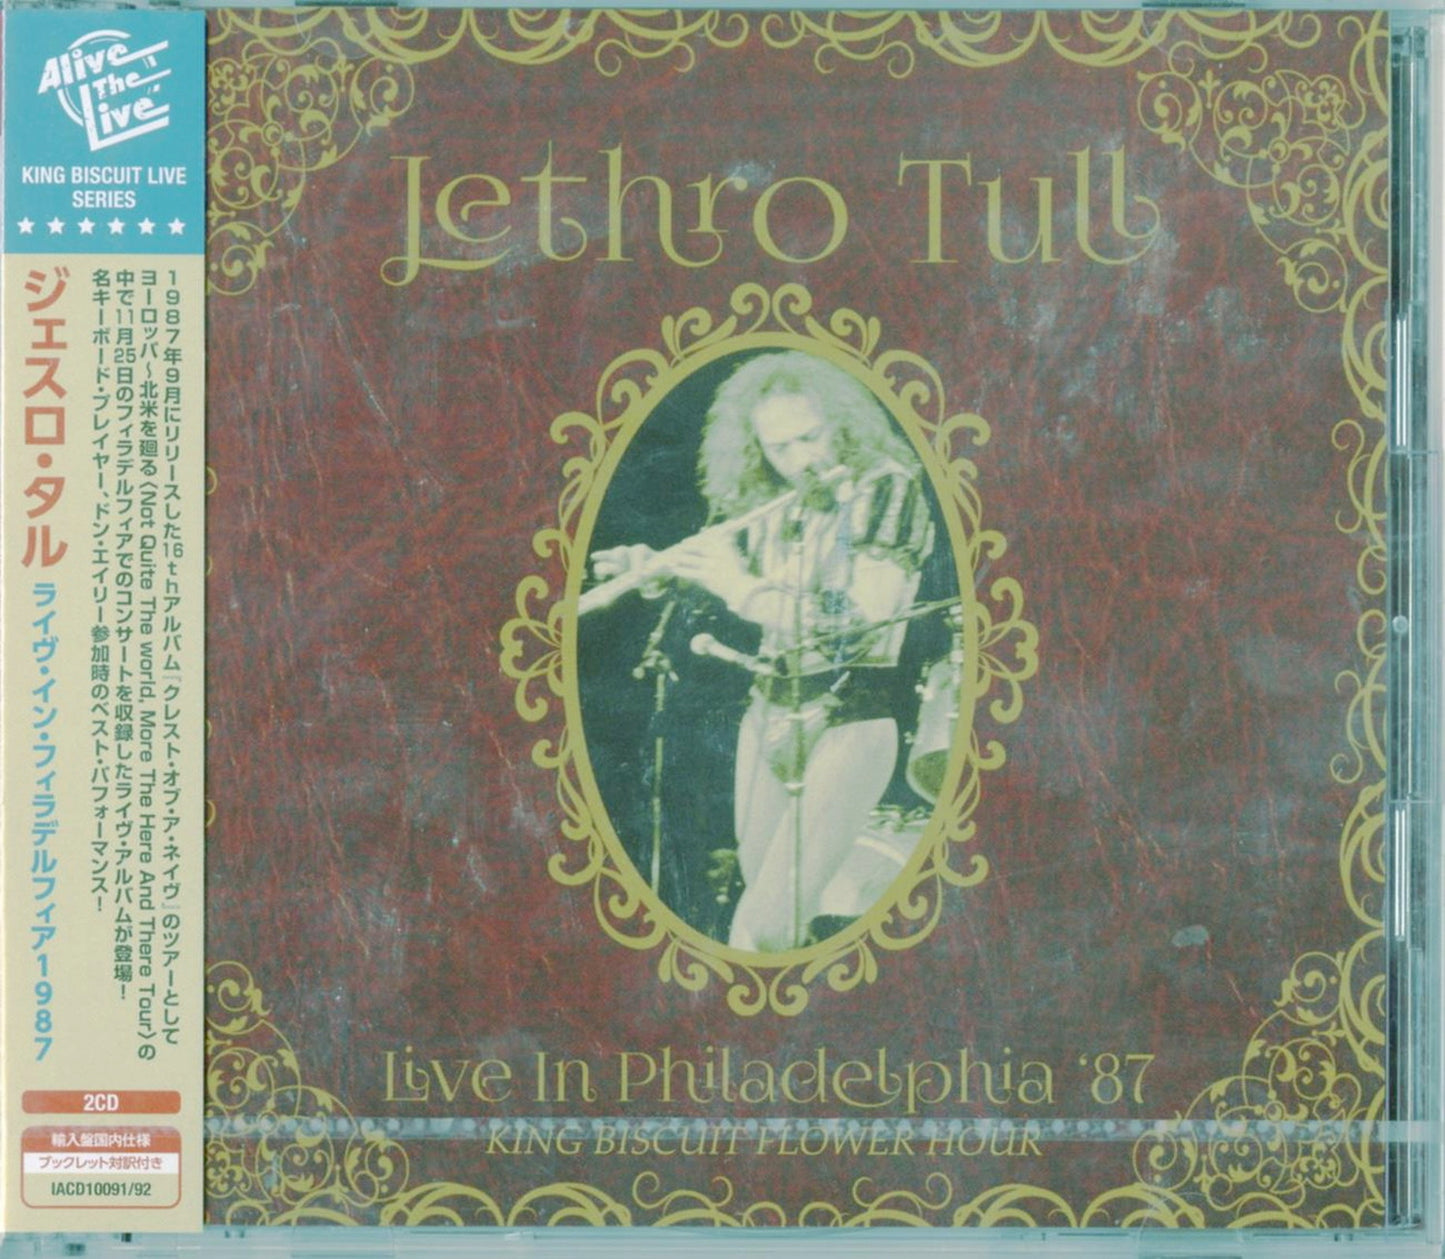 Jethro Tull - Live In Philadelphia '87 King Biscuit Flower Hour - Import 2 CD